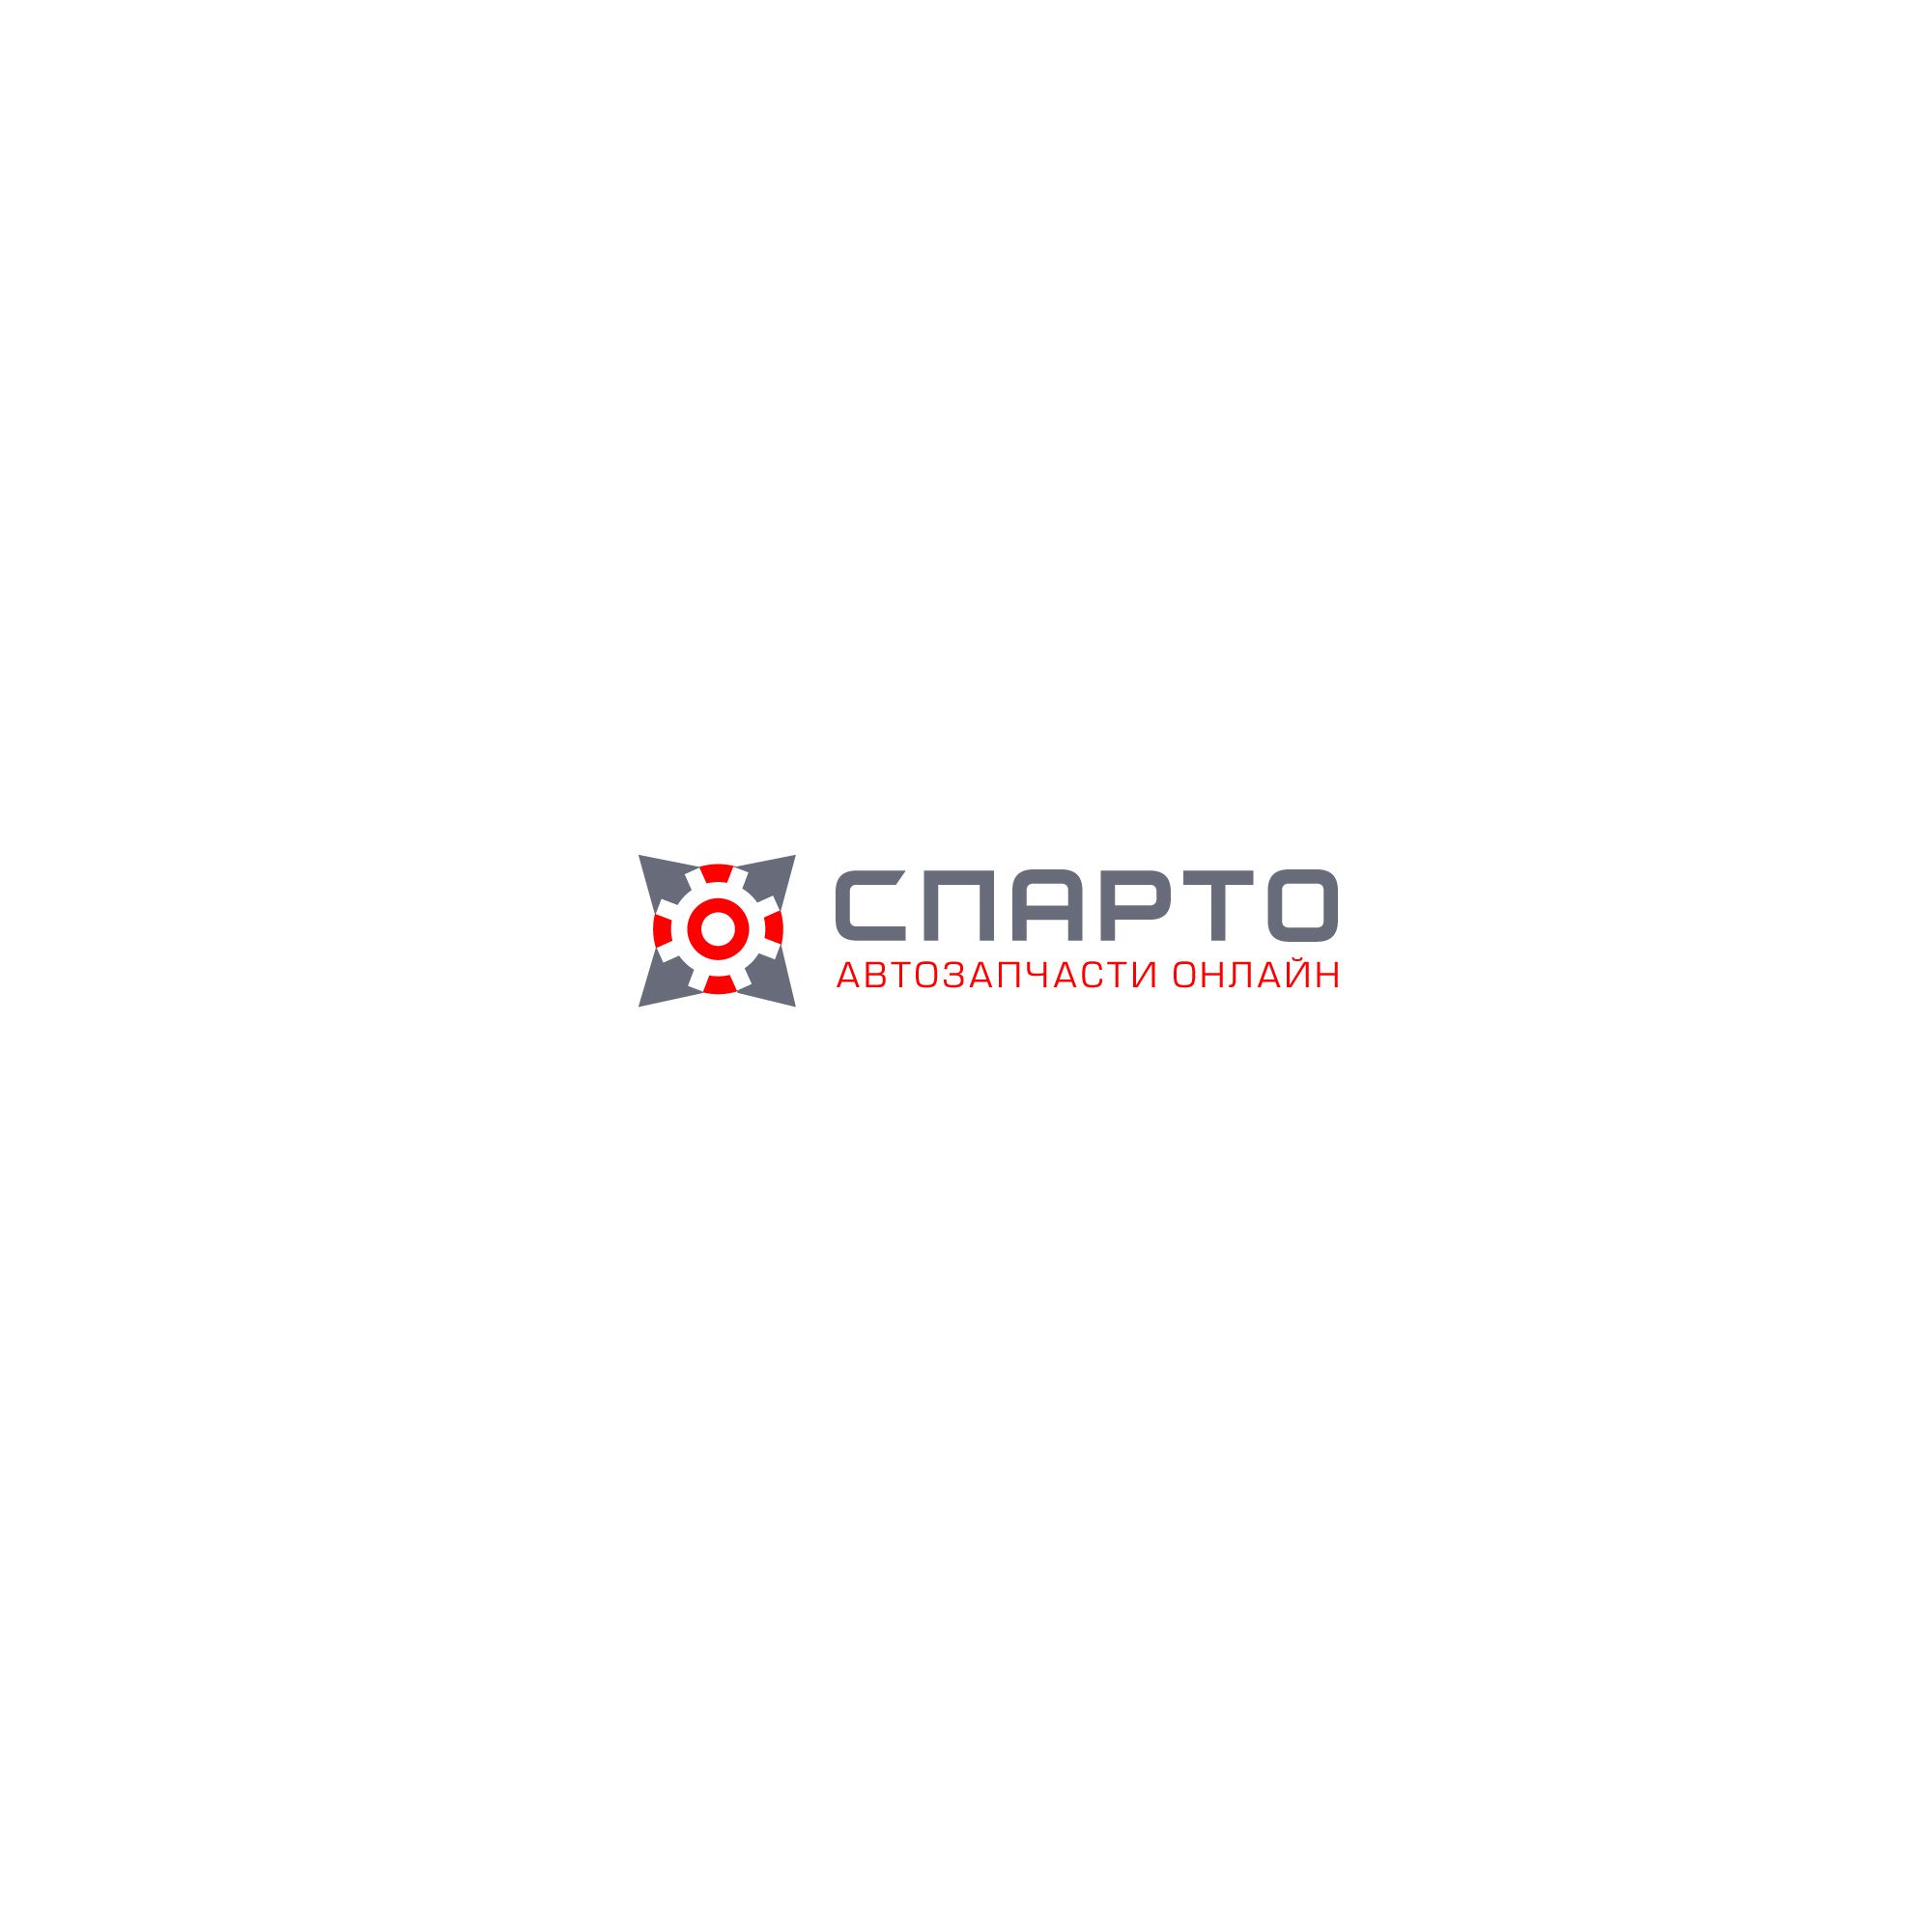 Логотип для Sparto (Спарто) - дизайнер designer12345